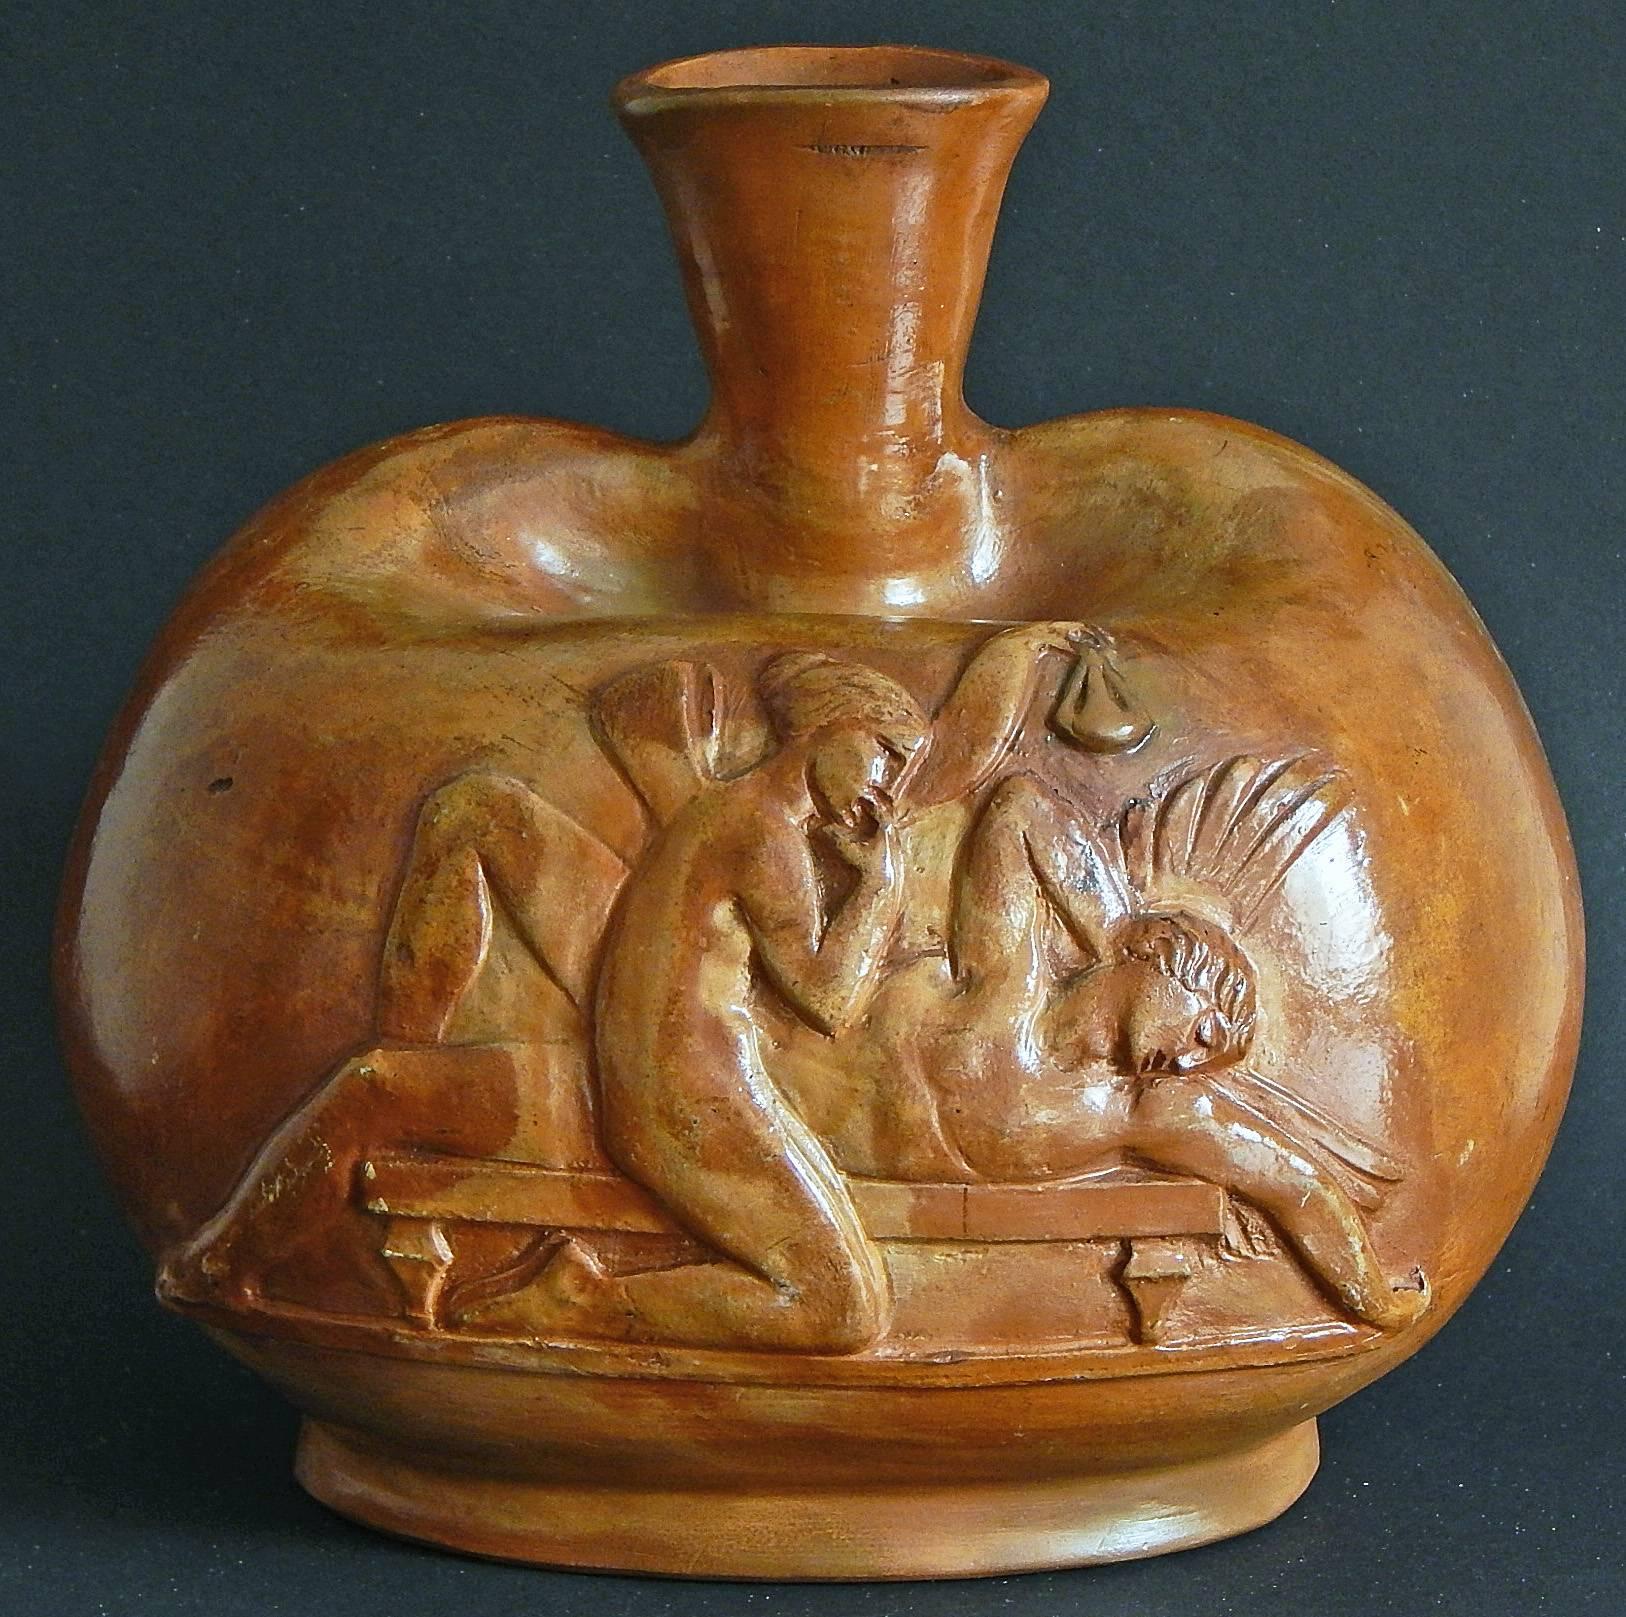 Diese Vase ist ein bemerkenswertes Paradebeispiel für die Bildhauerkunst des Art déco. Sie ist auf zwei Seiten mit Szenen aus den mythologischen Geschichten von Psyche und Amor verziert, die der dänische Meister Jens Jakob Bregnoe in den Ton